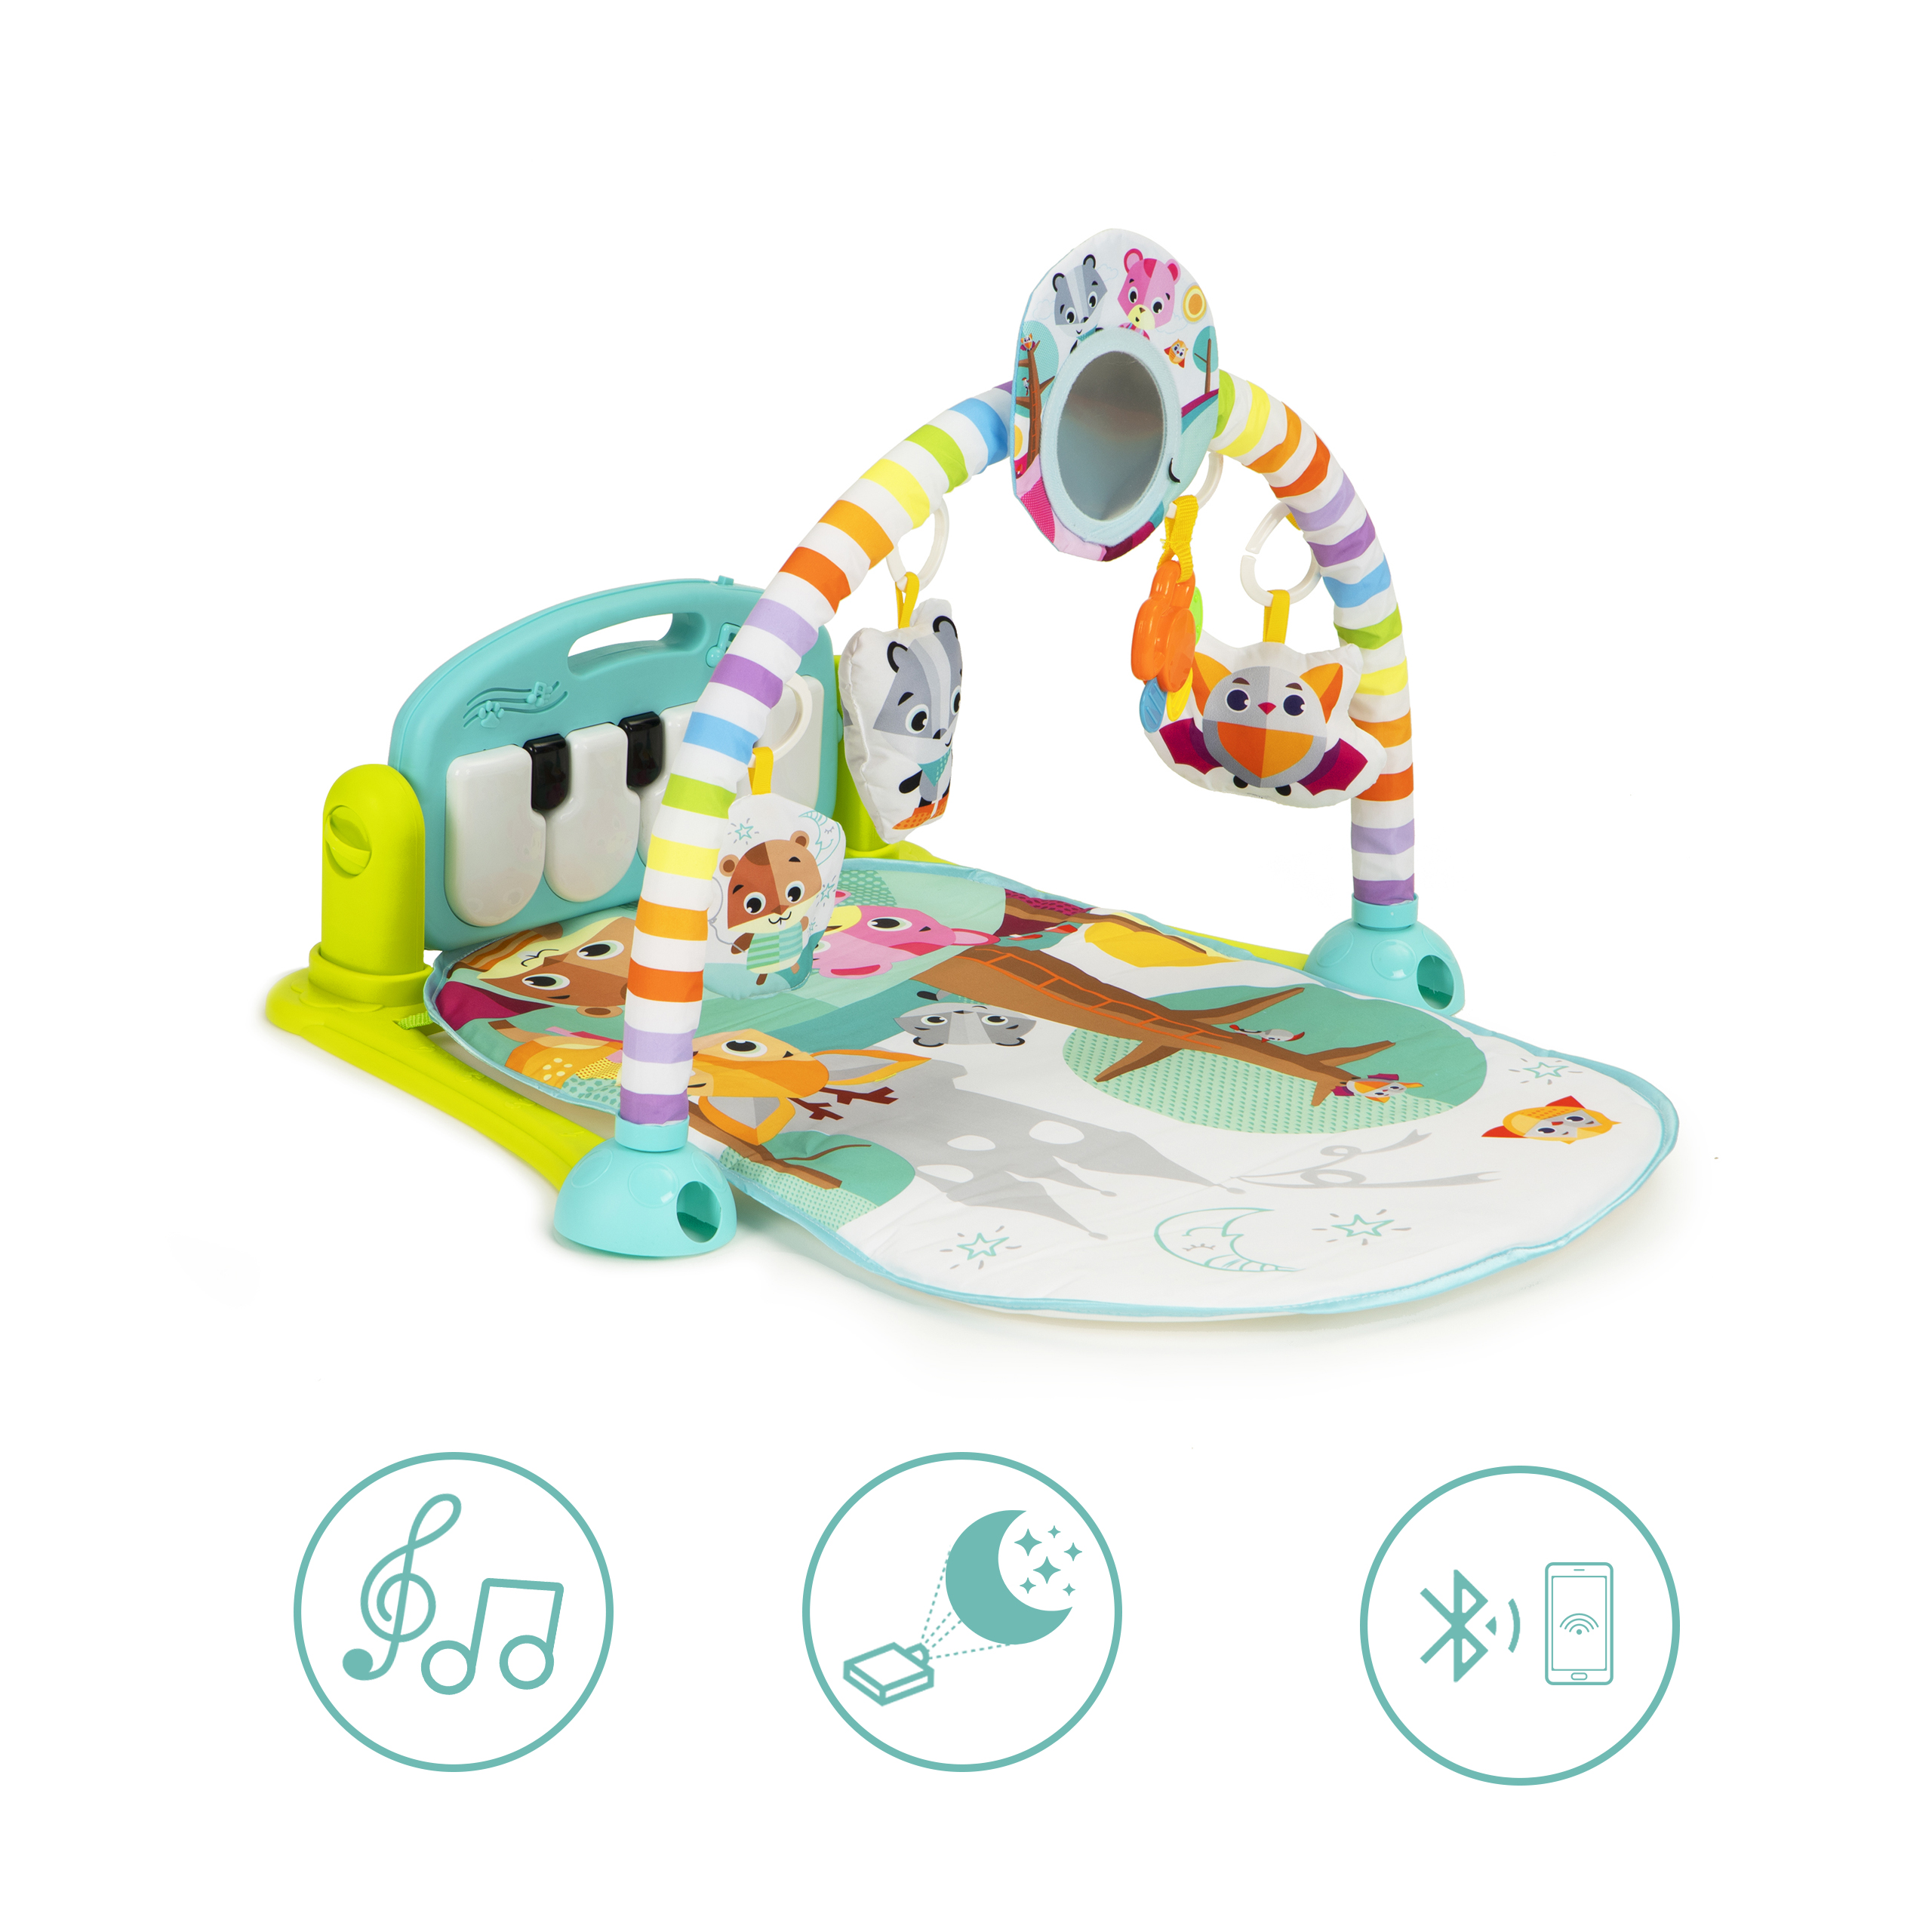 Centru de joaca cu activitati pentru bebelusi si copii, Bluetooth, Sunete si Lumini, 0 luni+, jucarii agatatoare, Smartic, multicolor [8]